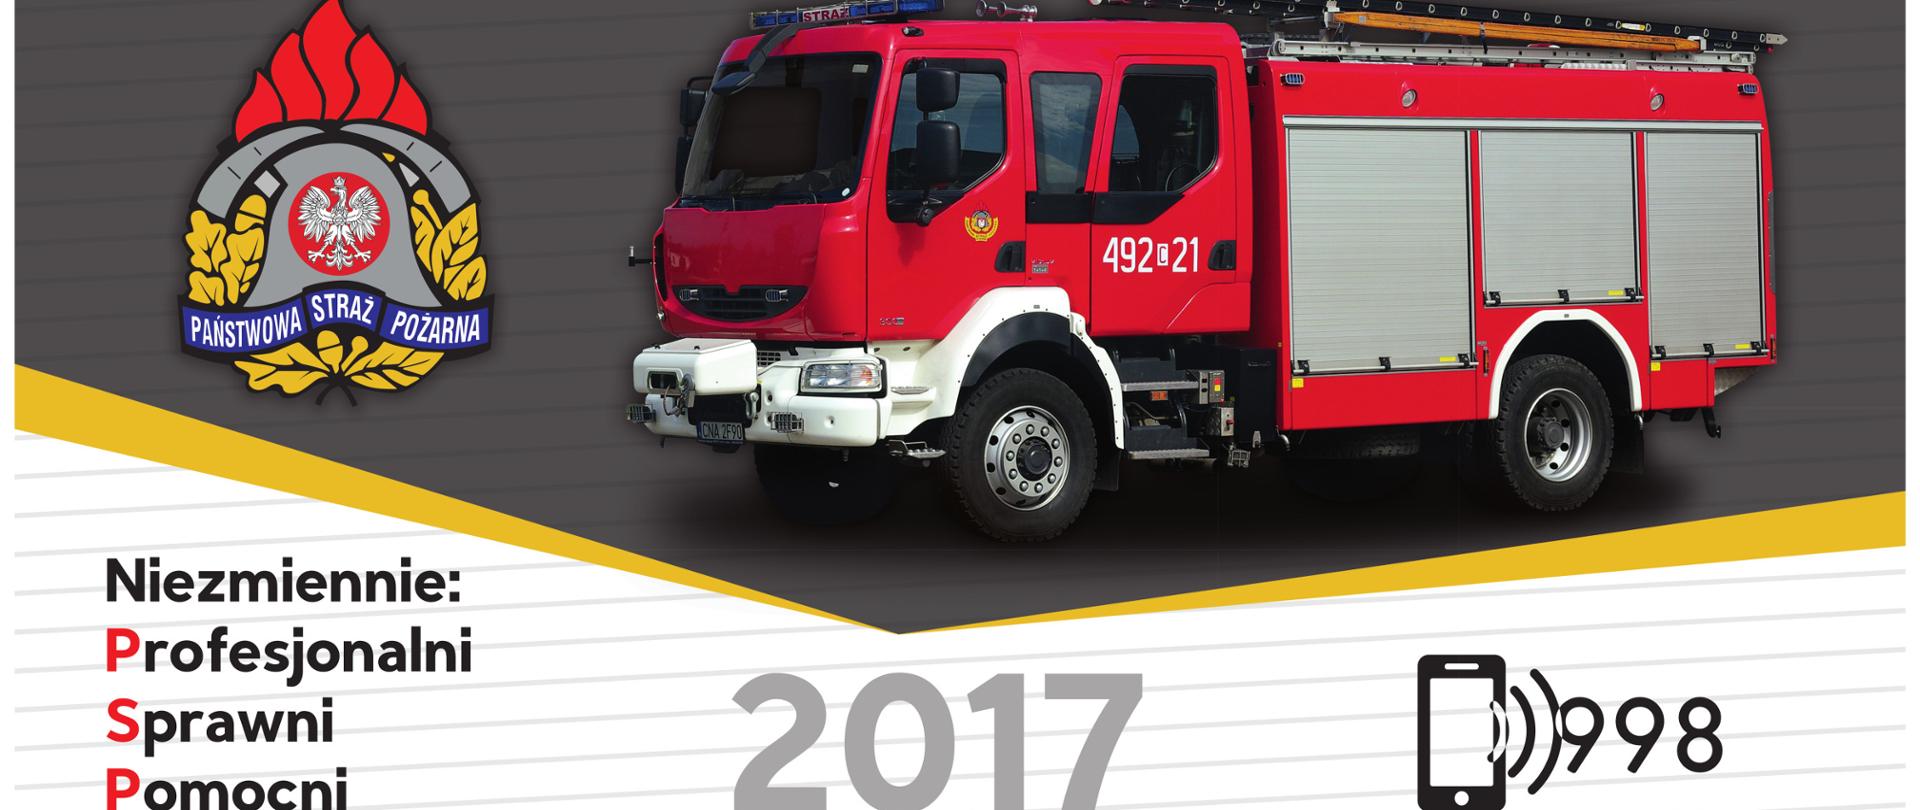 kalendarz plakatowy z miesiąca, na samej górze jeden pojazd pożarniczy a drugi samochód w lewym dolnym rogu, oraz napis 2017 25 lat Państwowej Straży Pożarnej